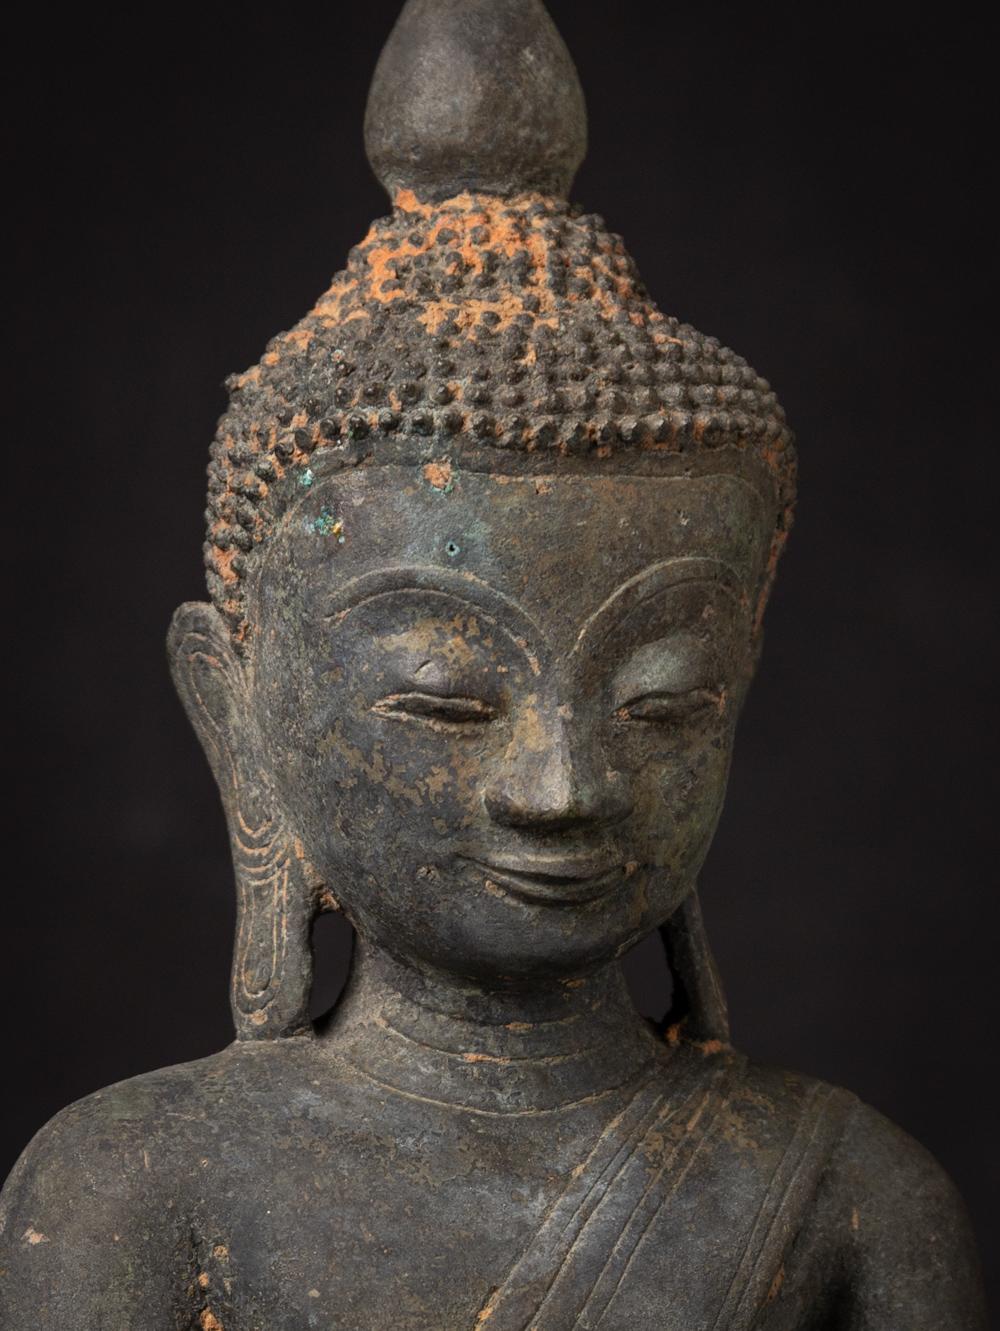 Diese antike Buddha-Statue aus Bronze ist ein wirklich einzigartiges und besonderes Sammlerstück. Sie ist 44,5 cm hoch, 23,6 cm breit und 13,5 cm tief, besteht aus Bronze und wiegt 8,93 kg. Die komplizierten Details der Statue weisen Spuren einer